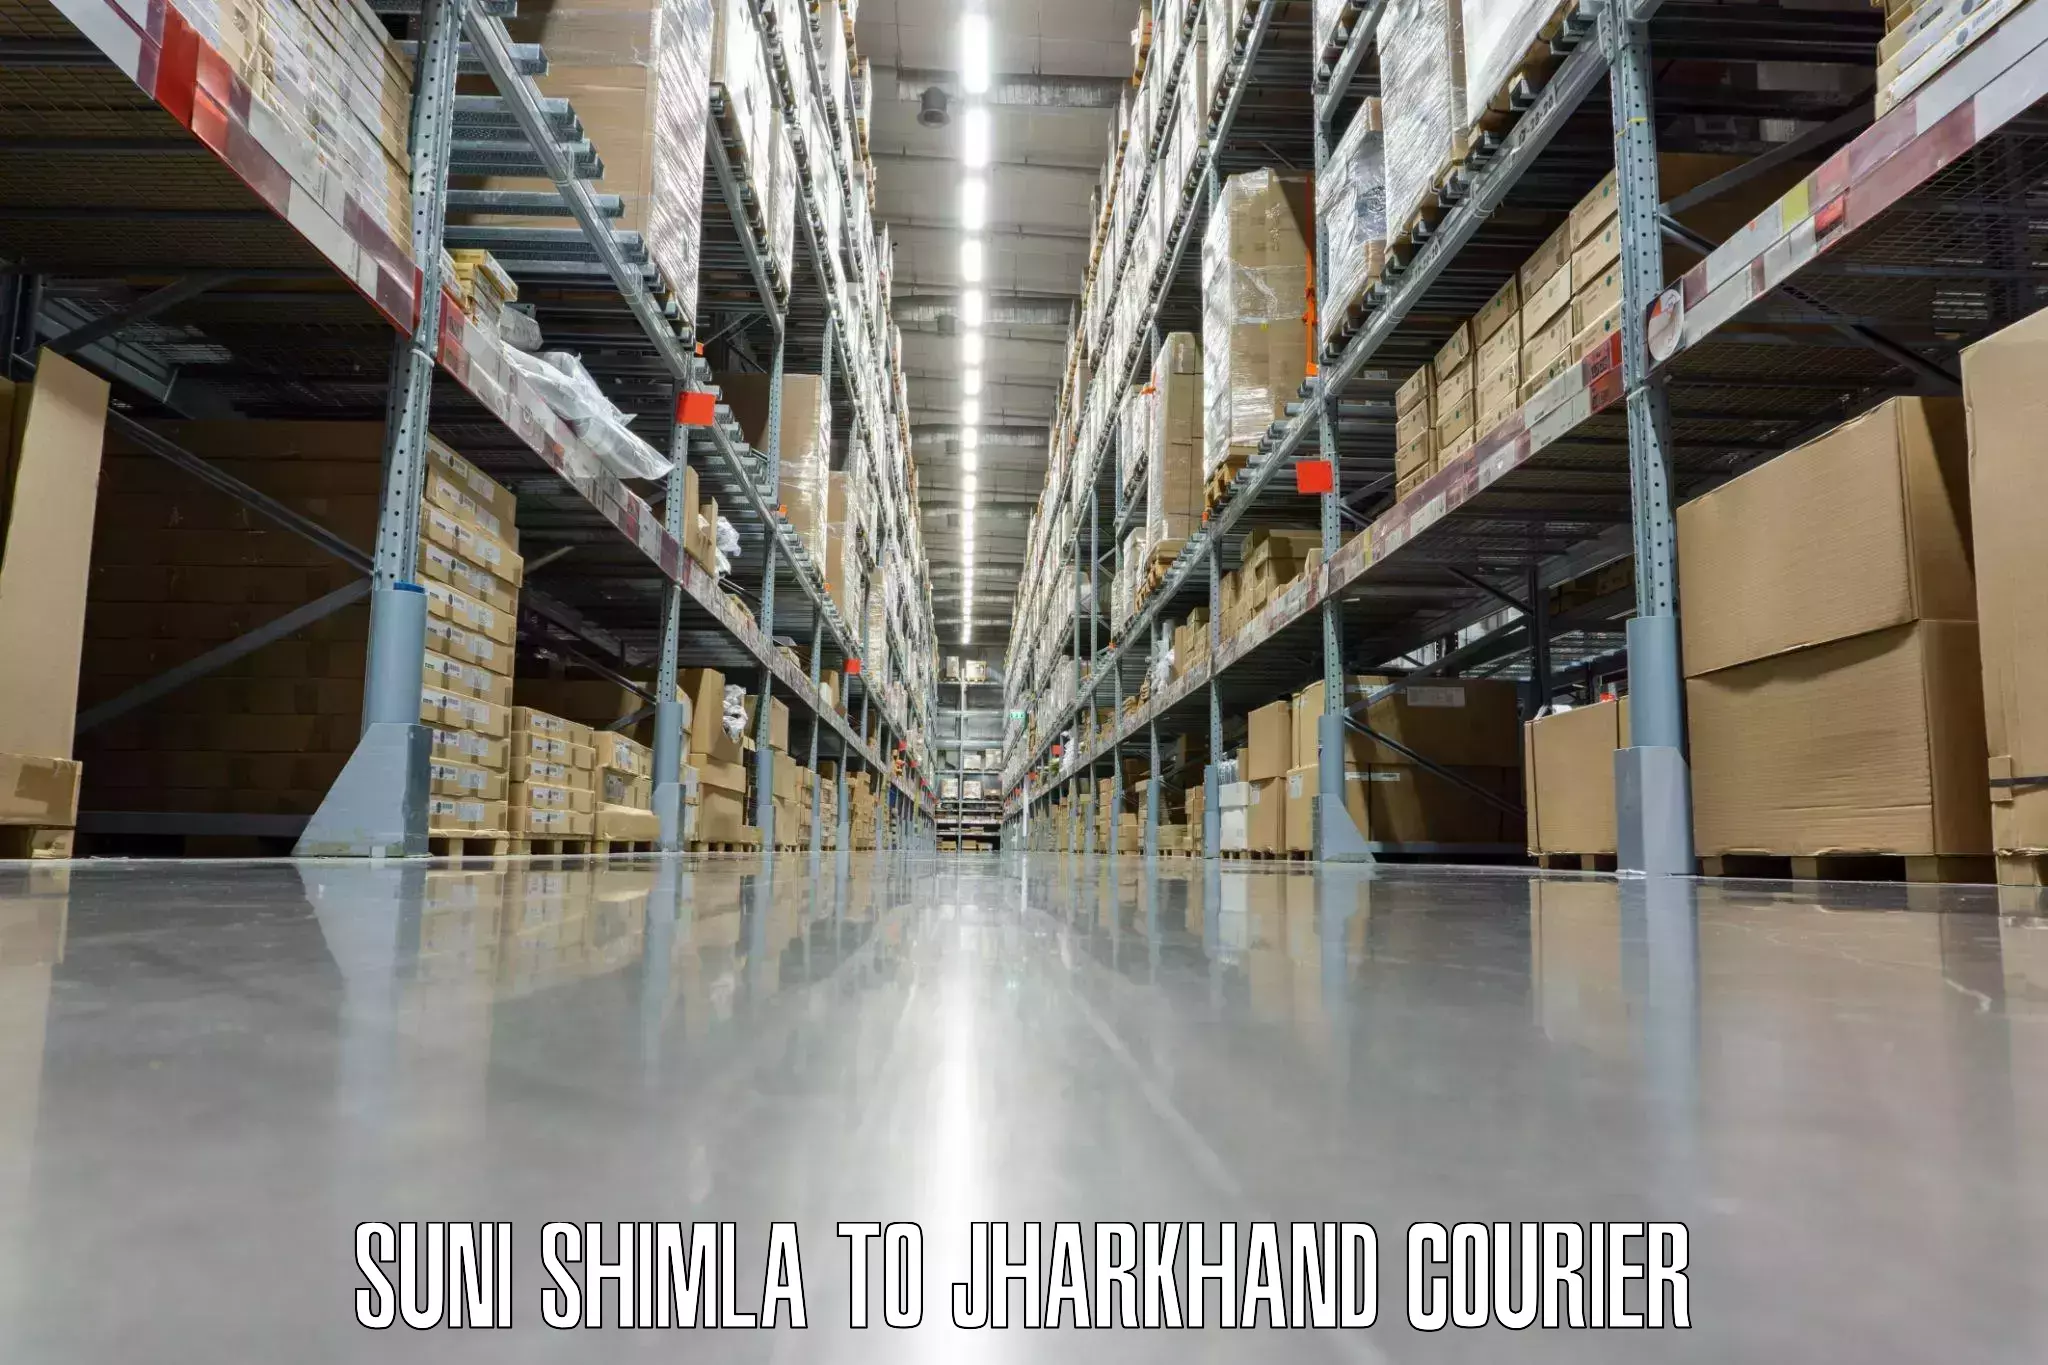 Luggage shipment strategy Suni Shimla to Jharkhand